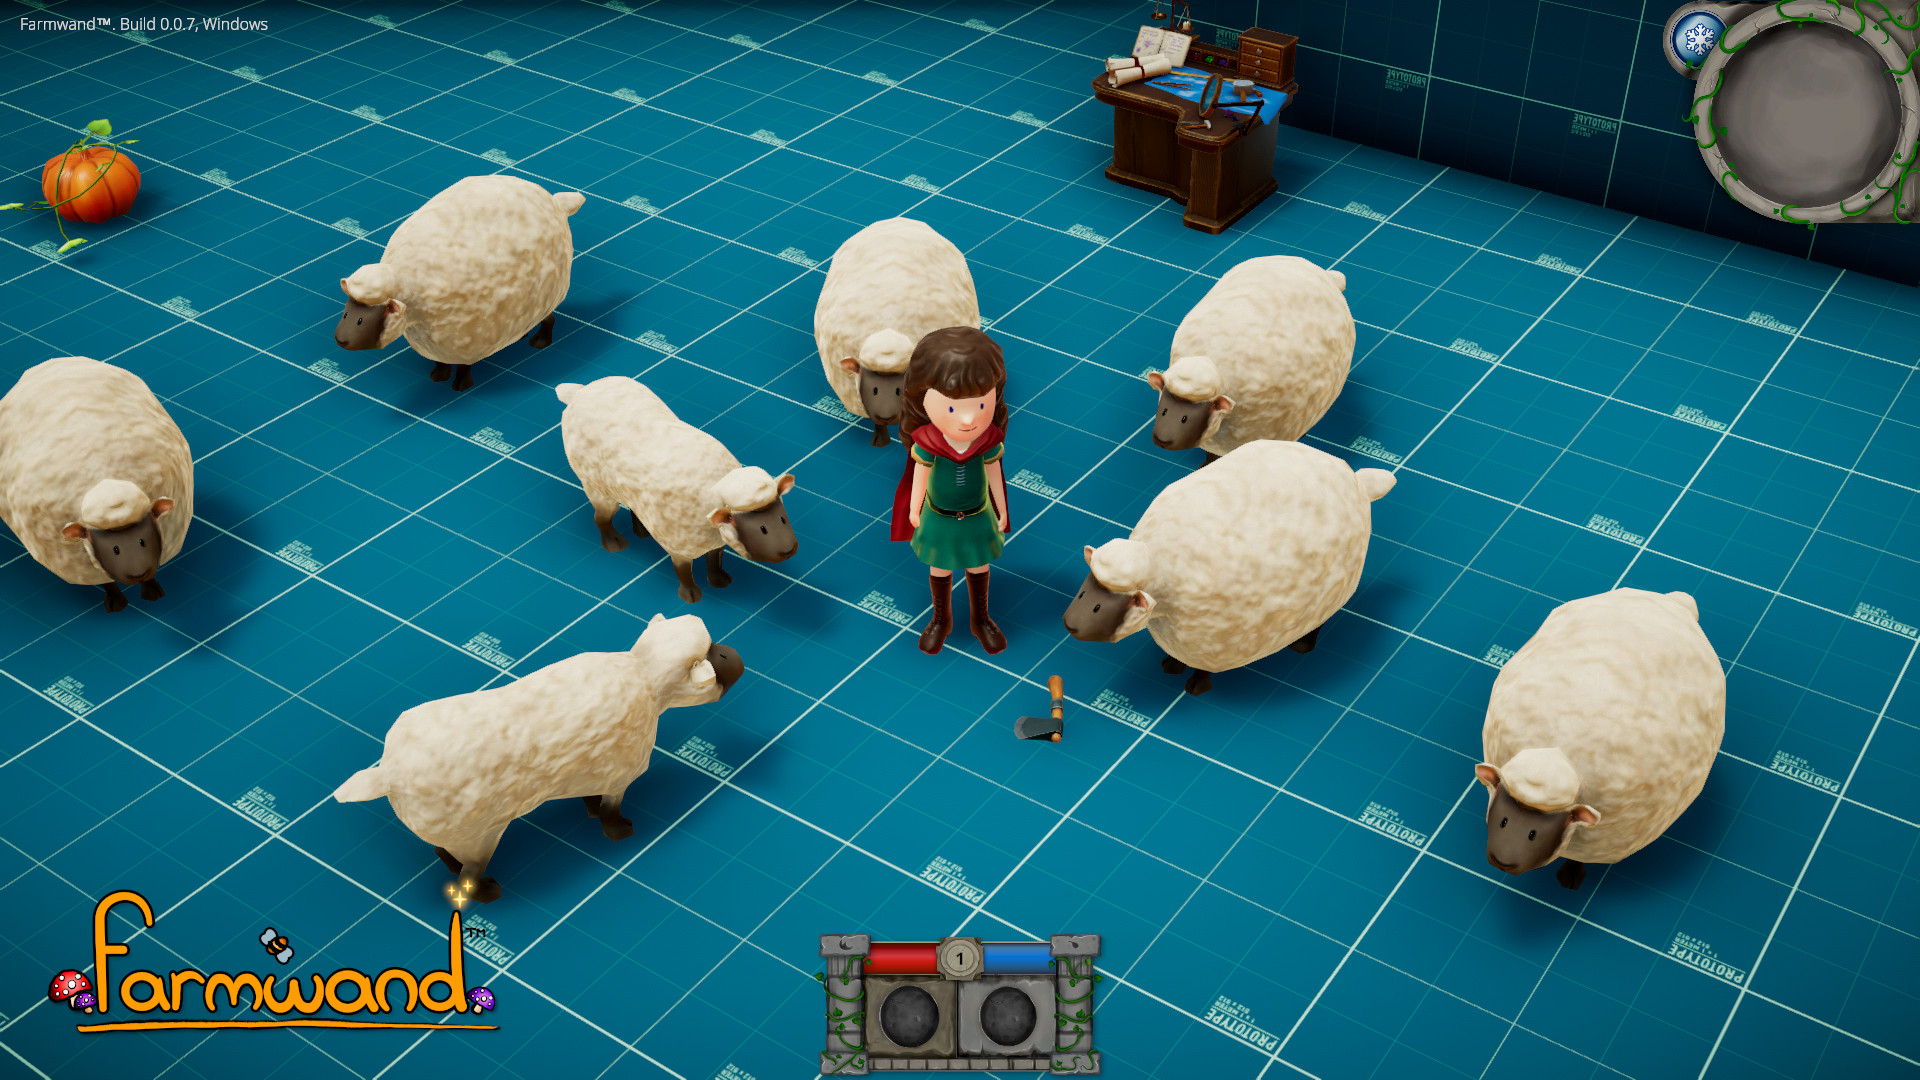 Sheep surroundingme